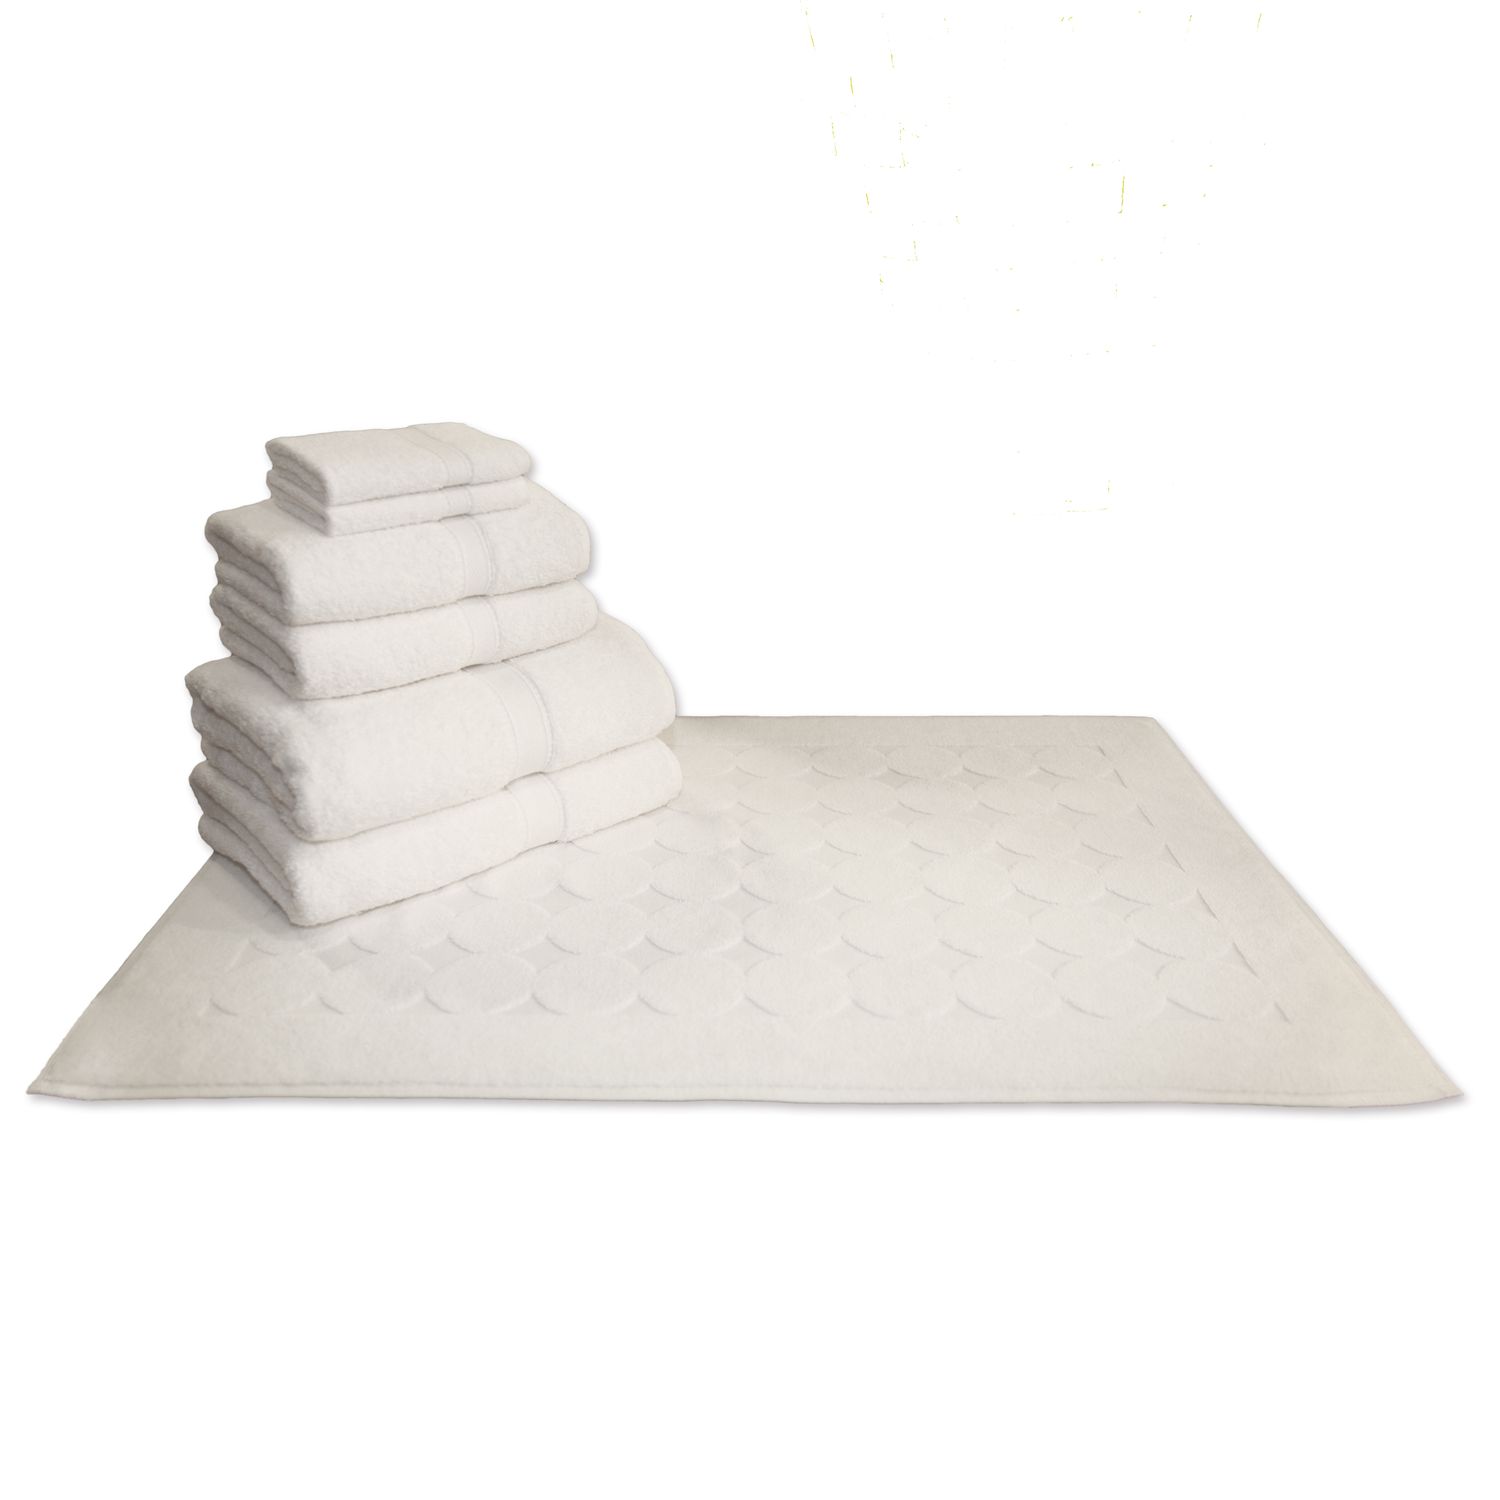 Линум Текстиль для дома махровый 7 шт. Набор банных полотенец и ковриков для ванной с геометрическим узором